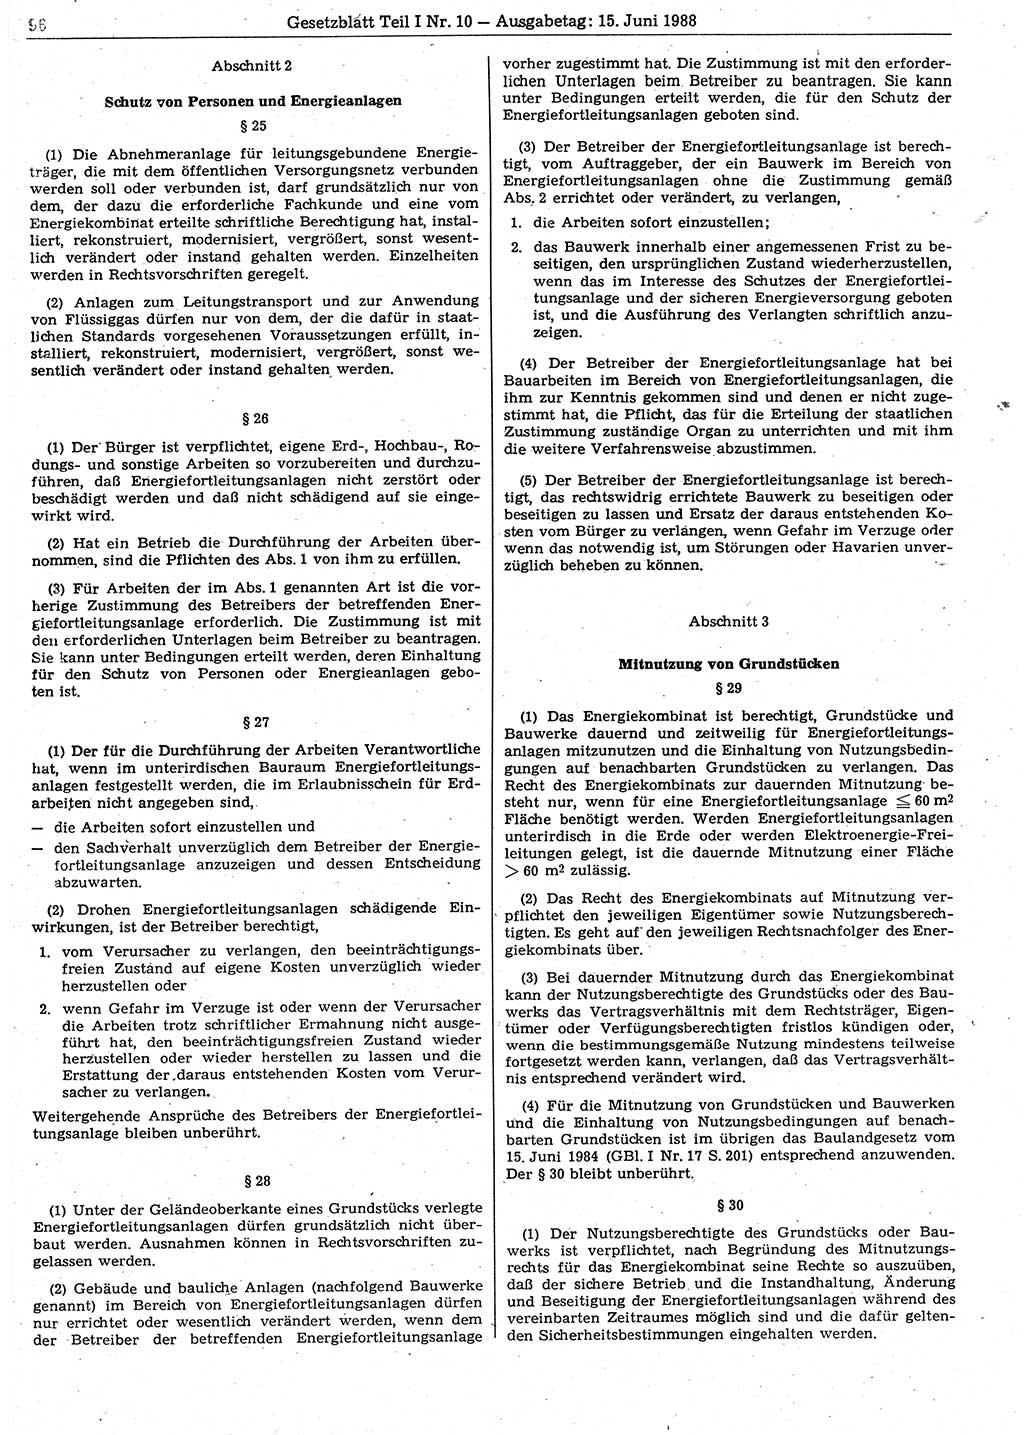 Gesetzblatt (GBl.) der Deutschen Demokratischen Republik (DDR) Teil Ⅰ 1988, Seite 96 (GBl. DDR Ⅰ 1988, S. 96)